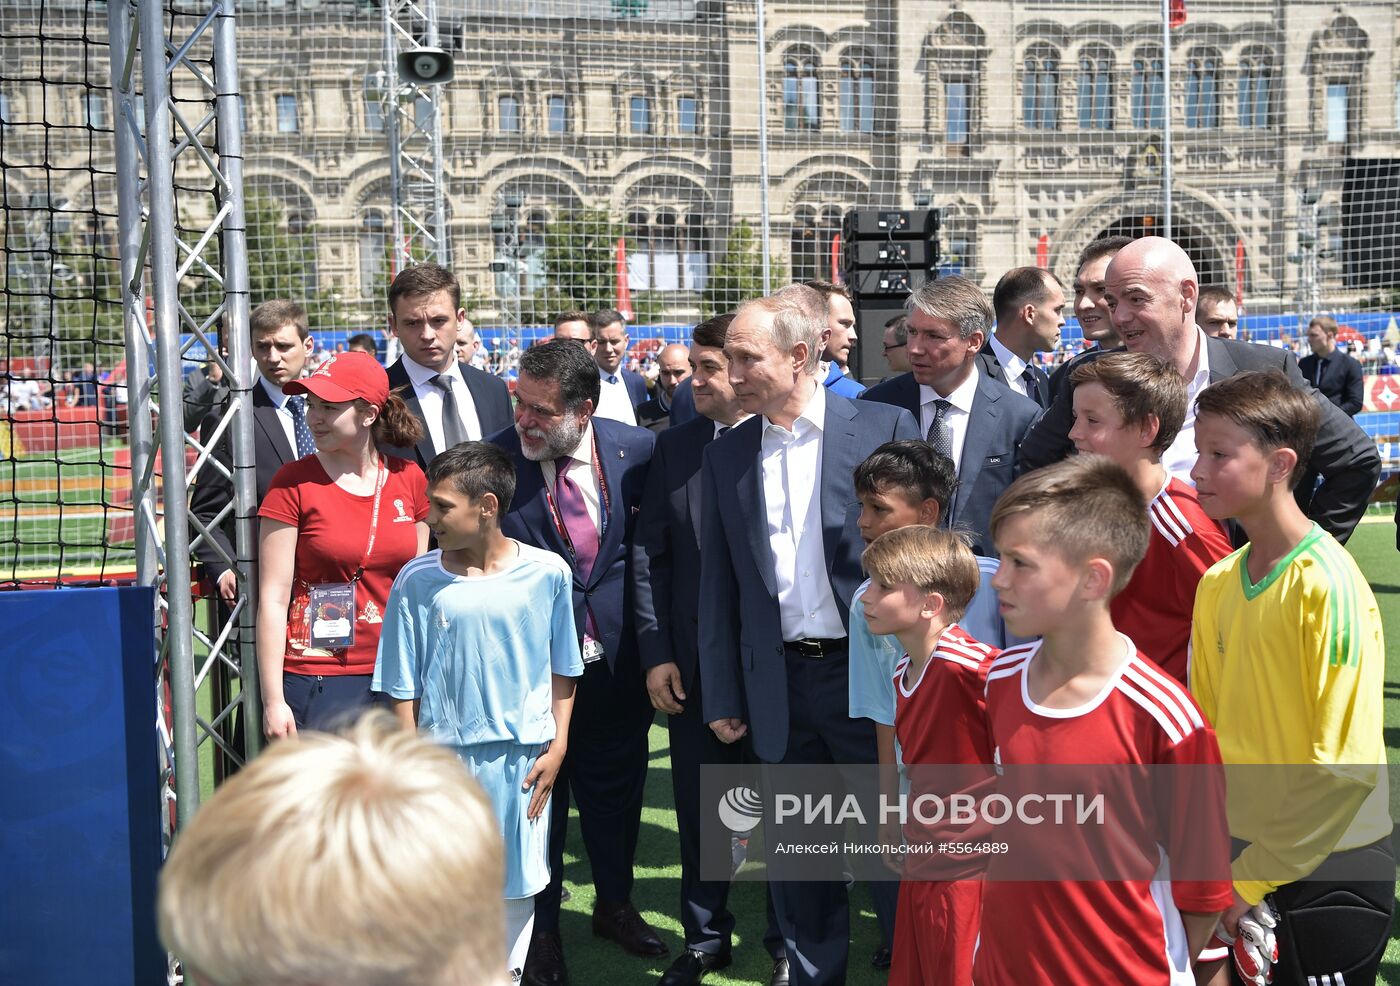 Президент РФ В. Путин посетил парк футбола на Красной площади